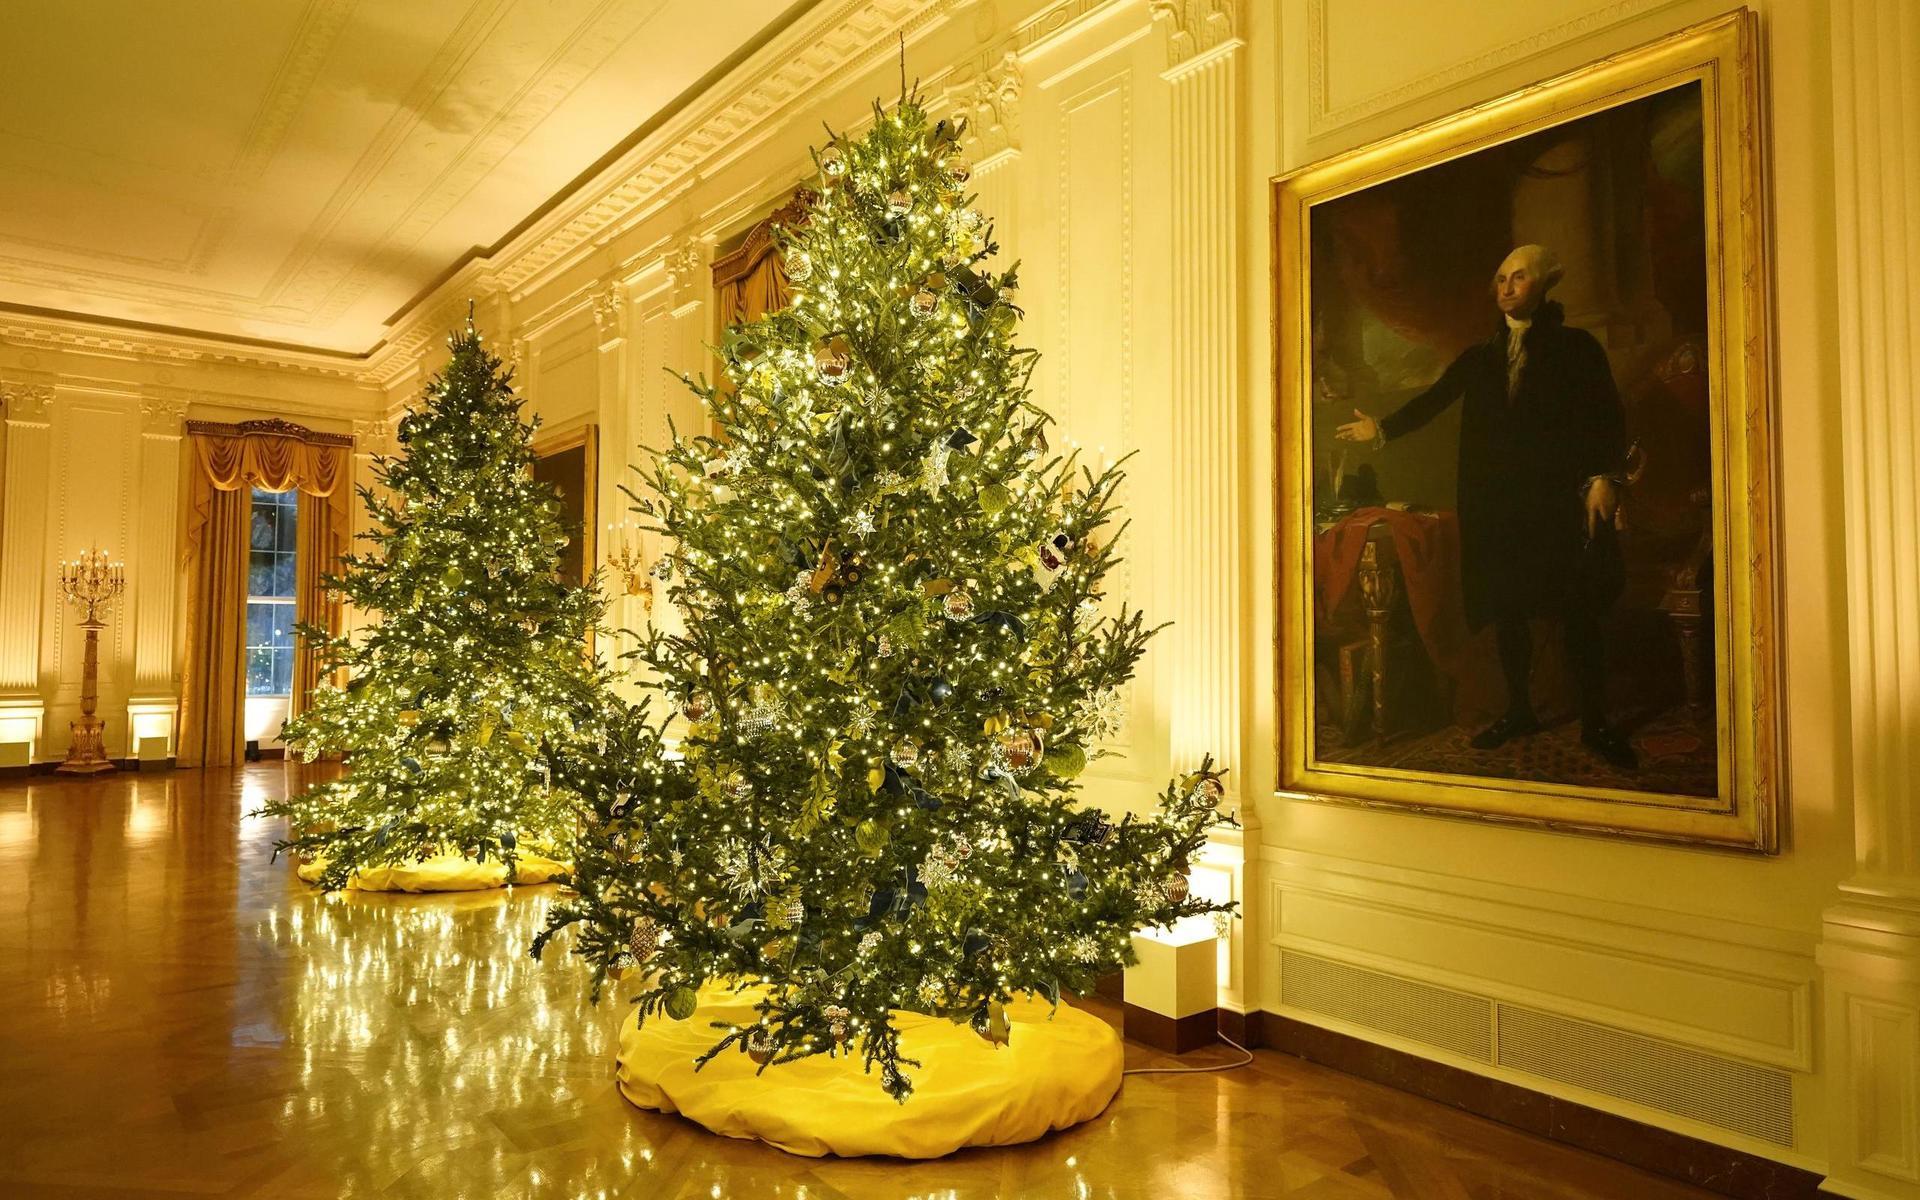 Östra rummet med två julgranar. George Washington på väggen ser ut att välkomna dekorationerna.